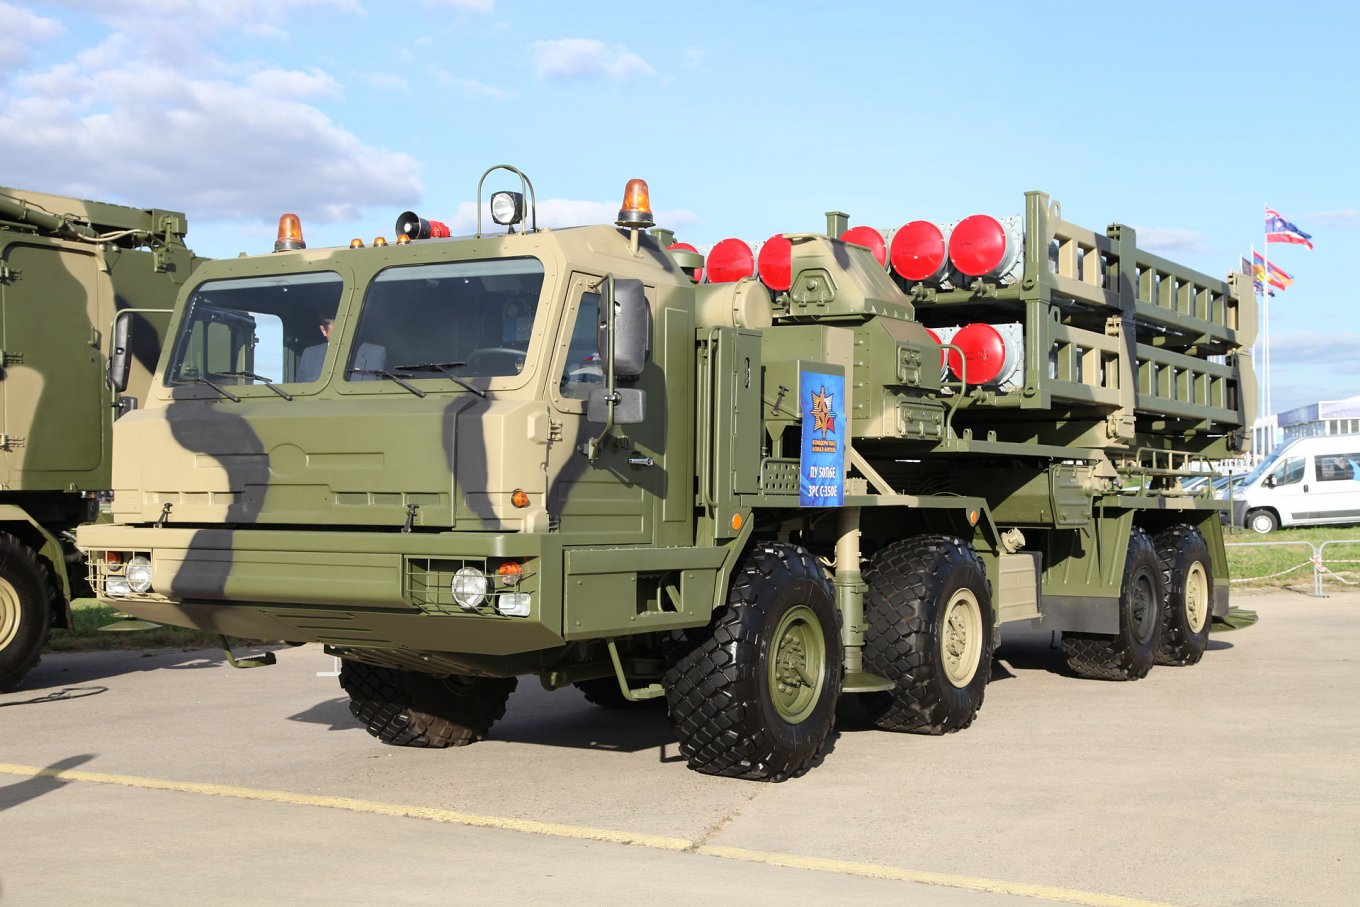 Nga khoe 'vũ khí thần kỳ mới' có thể bắn hạ mục tiêu ở Ukraine mà không cần người điều khiển - Ảnh 2.